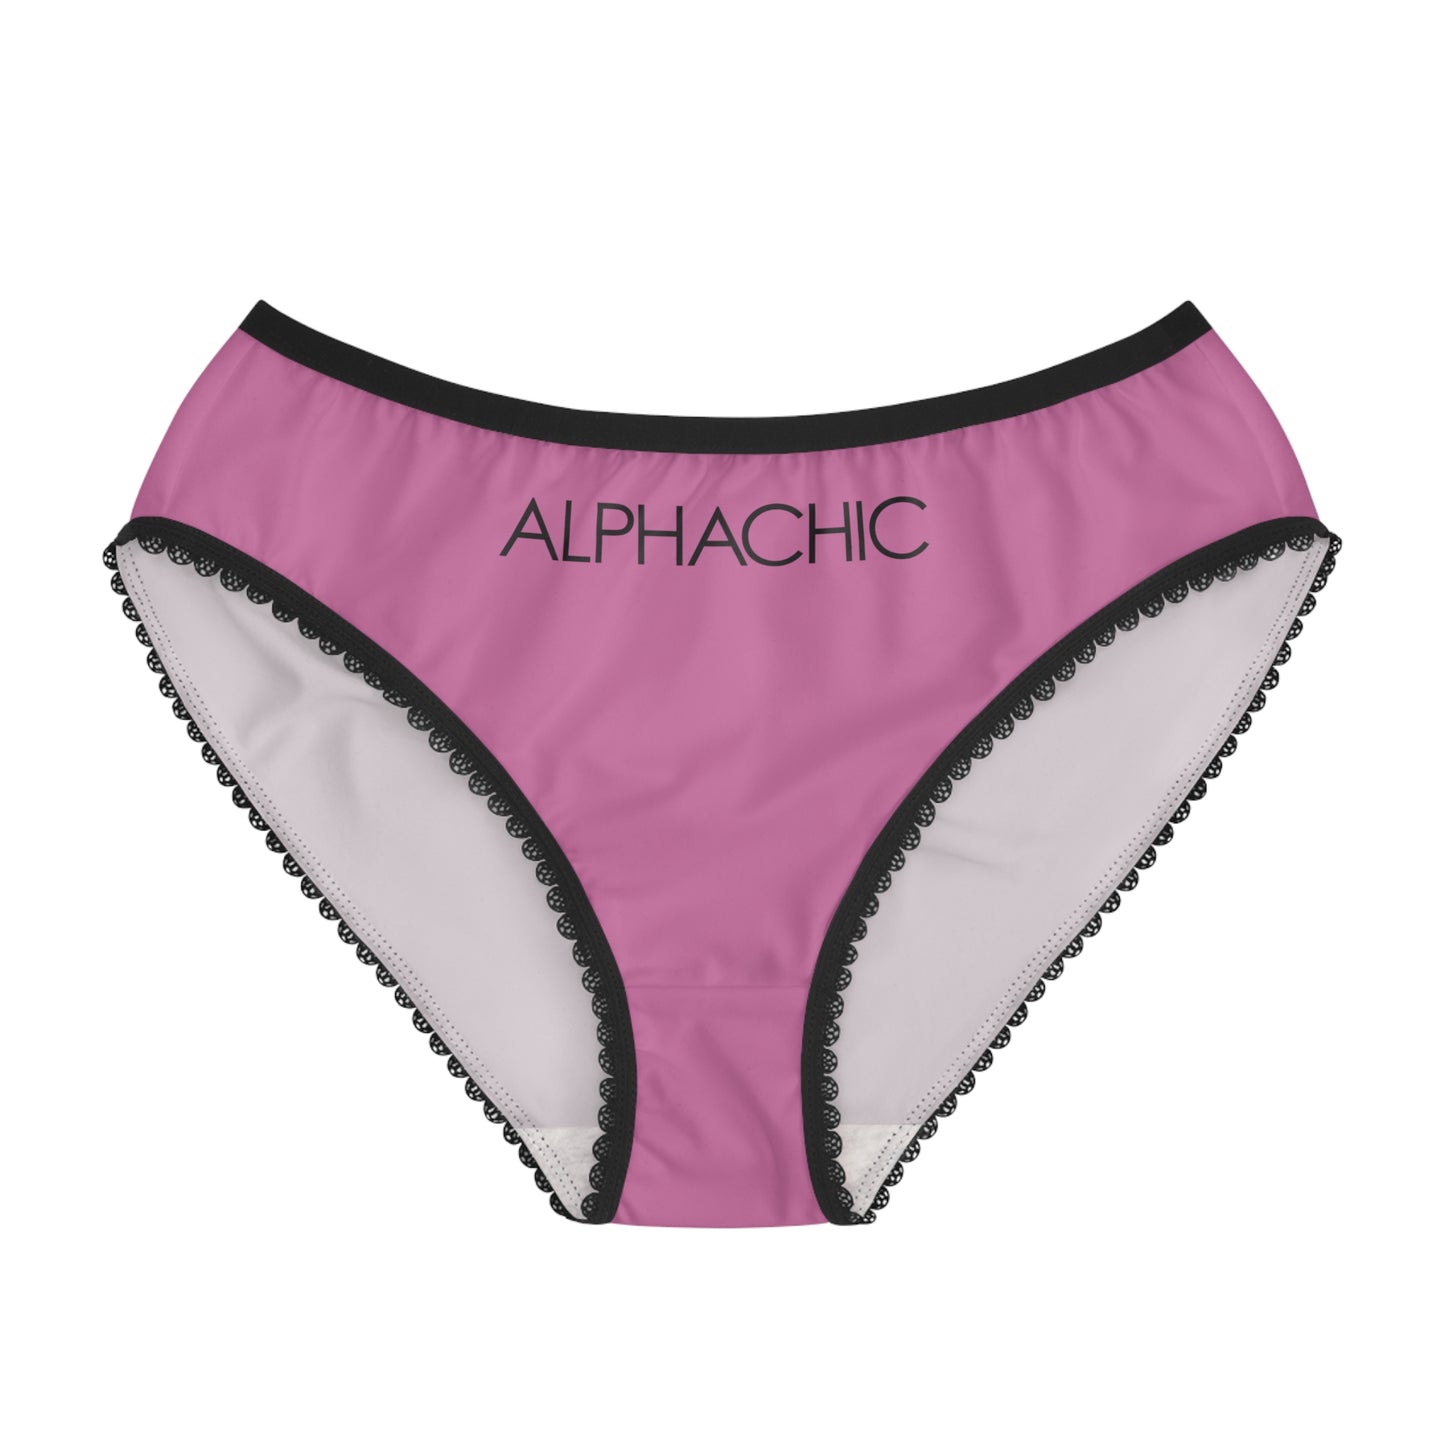 AlphaChic Briefs - Light Pink